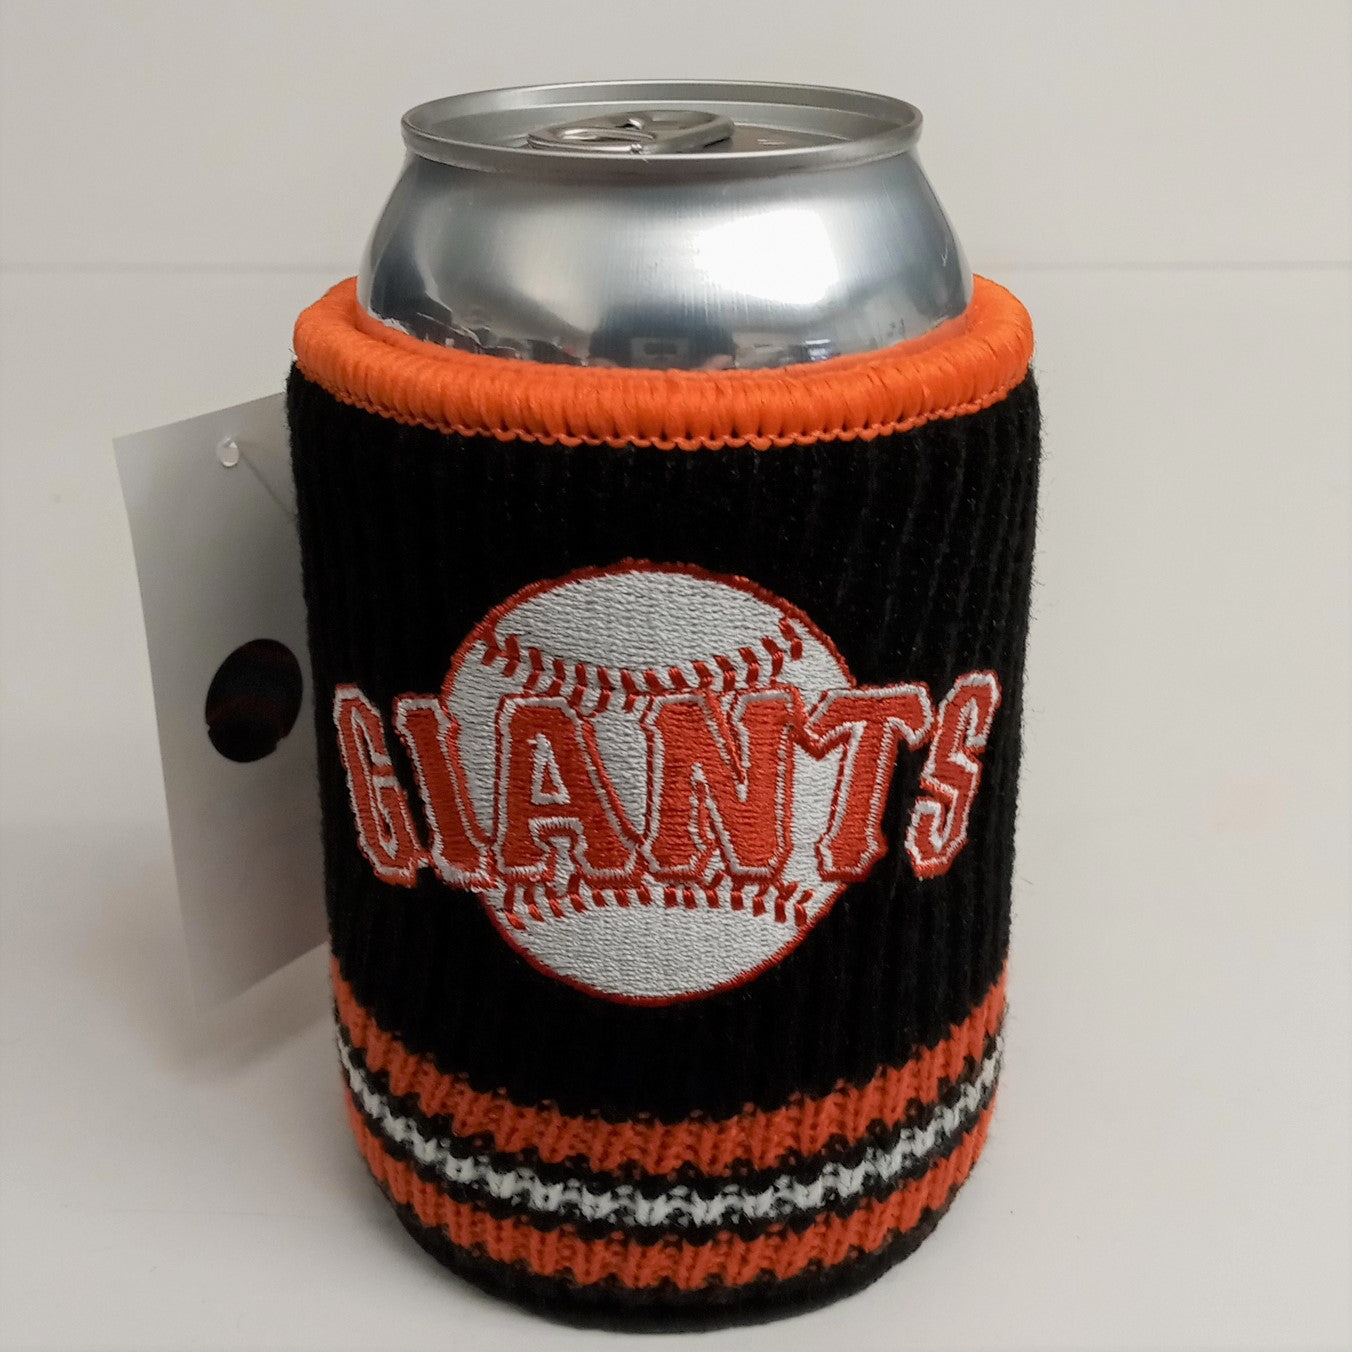 Kolder Woolie Beverage Koozie Insulator MLB Baseball Teams Logos